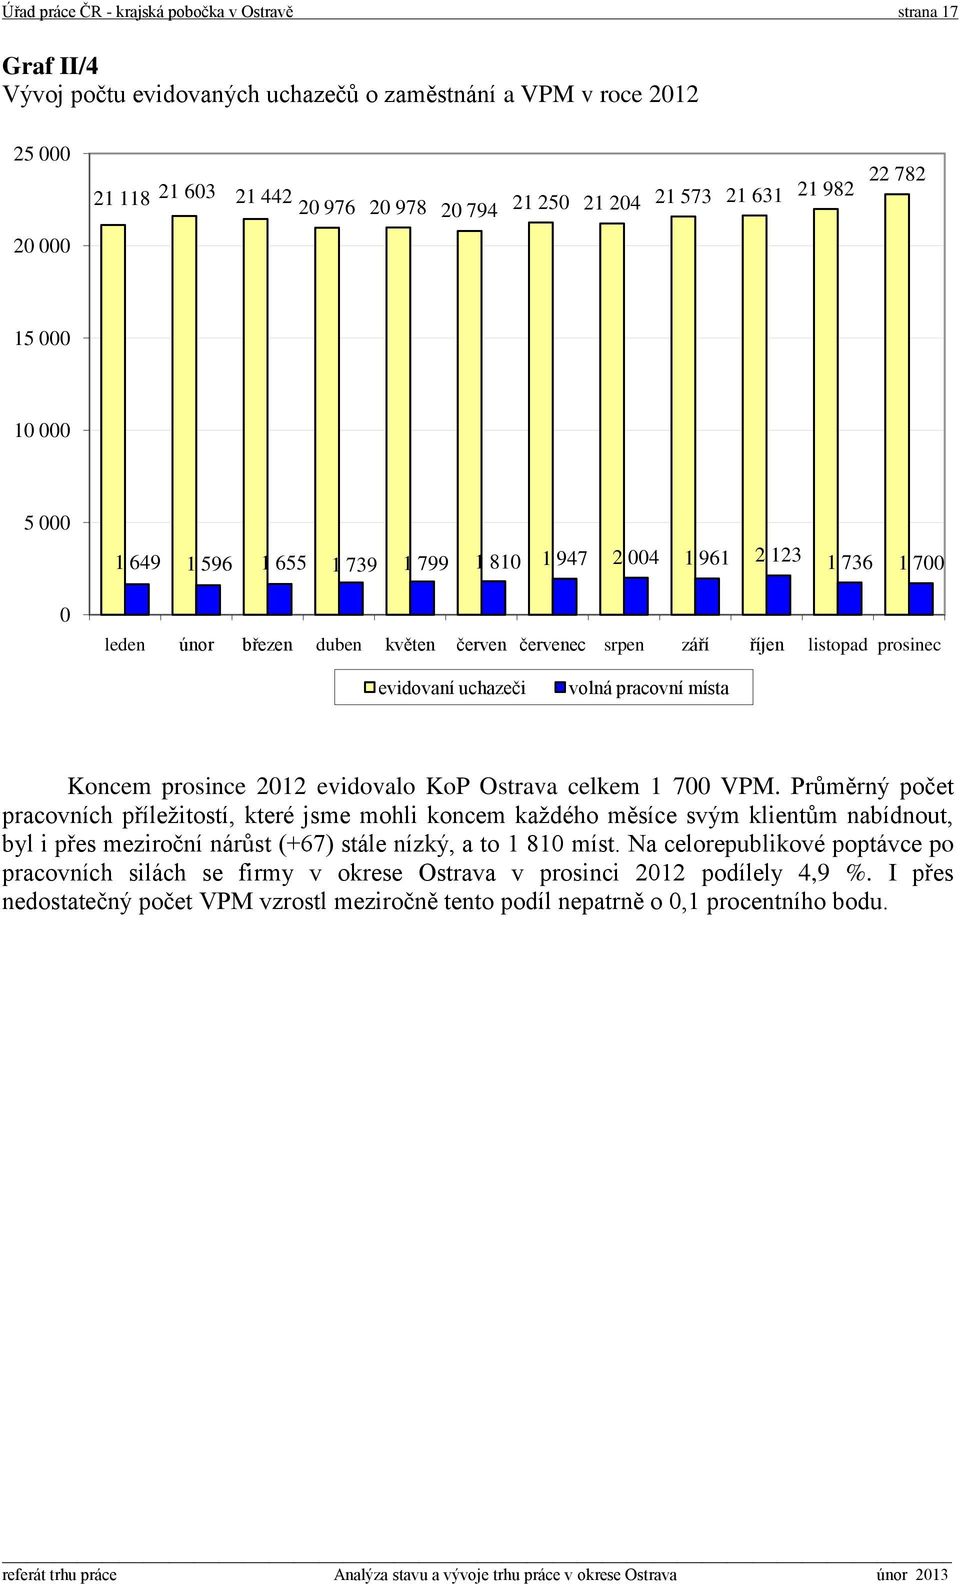 prosinec evidovaní uchazeči volná pracovní místa Koncem prosince 2012 evidovalo KoP Ostrava celkem 1 700 VPM.